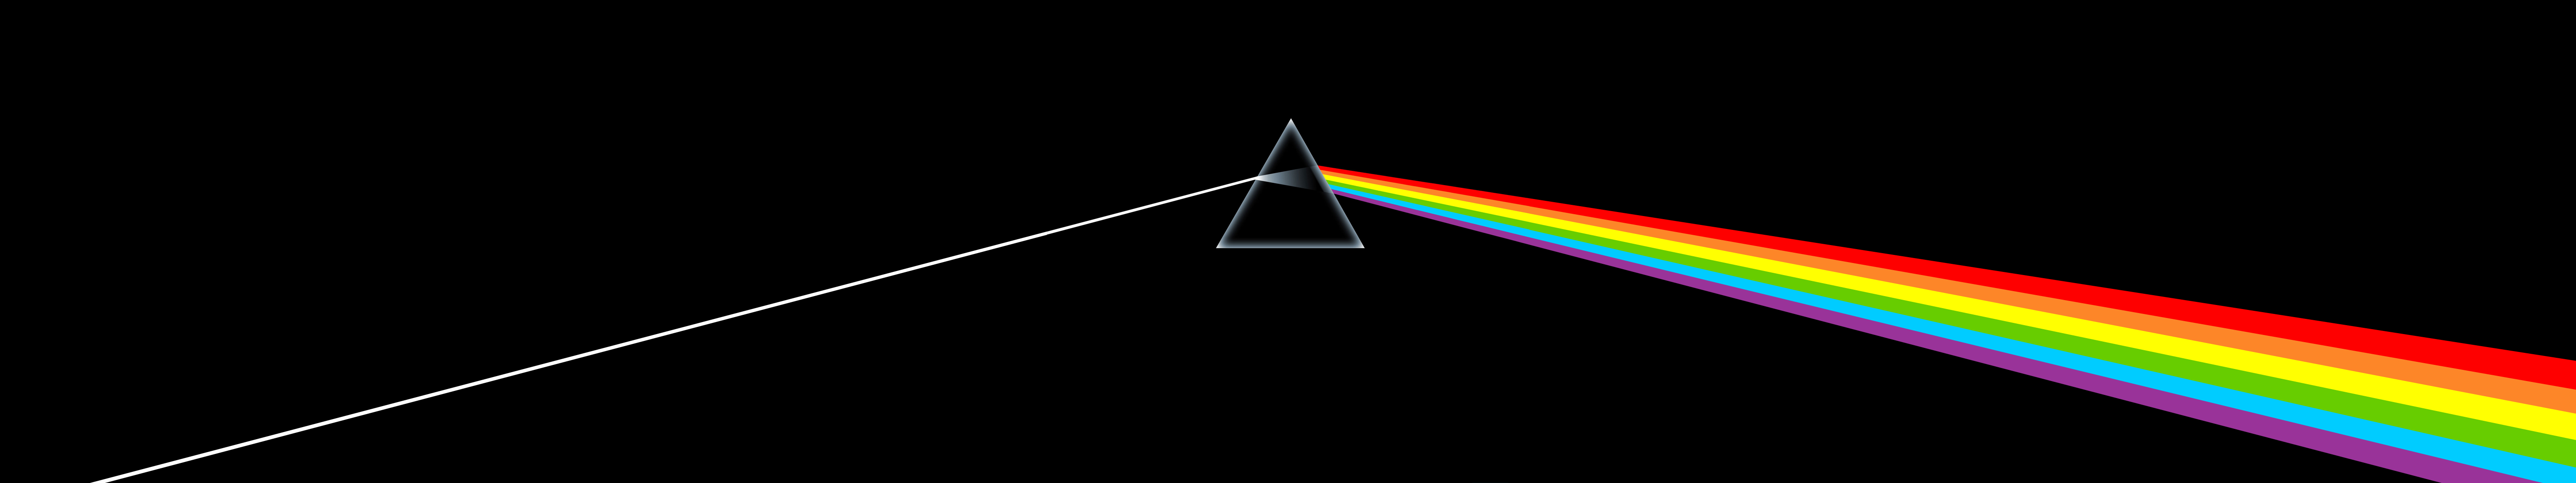 Prism Pink Floyd Black 5760x1080